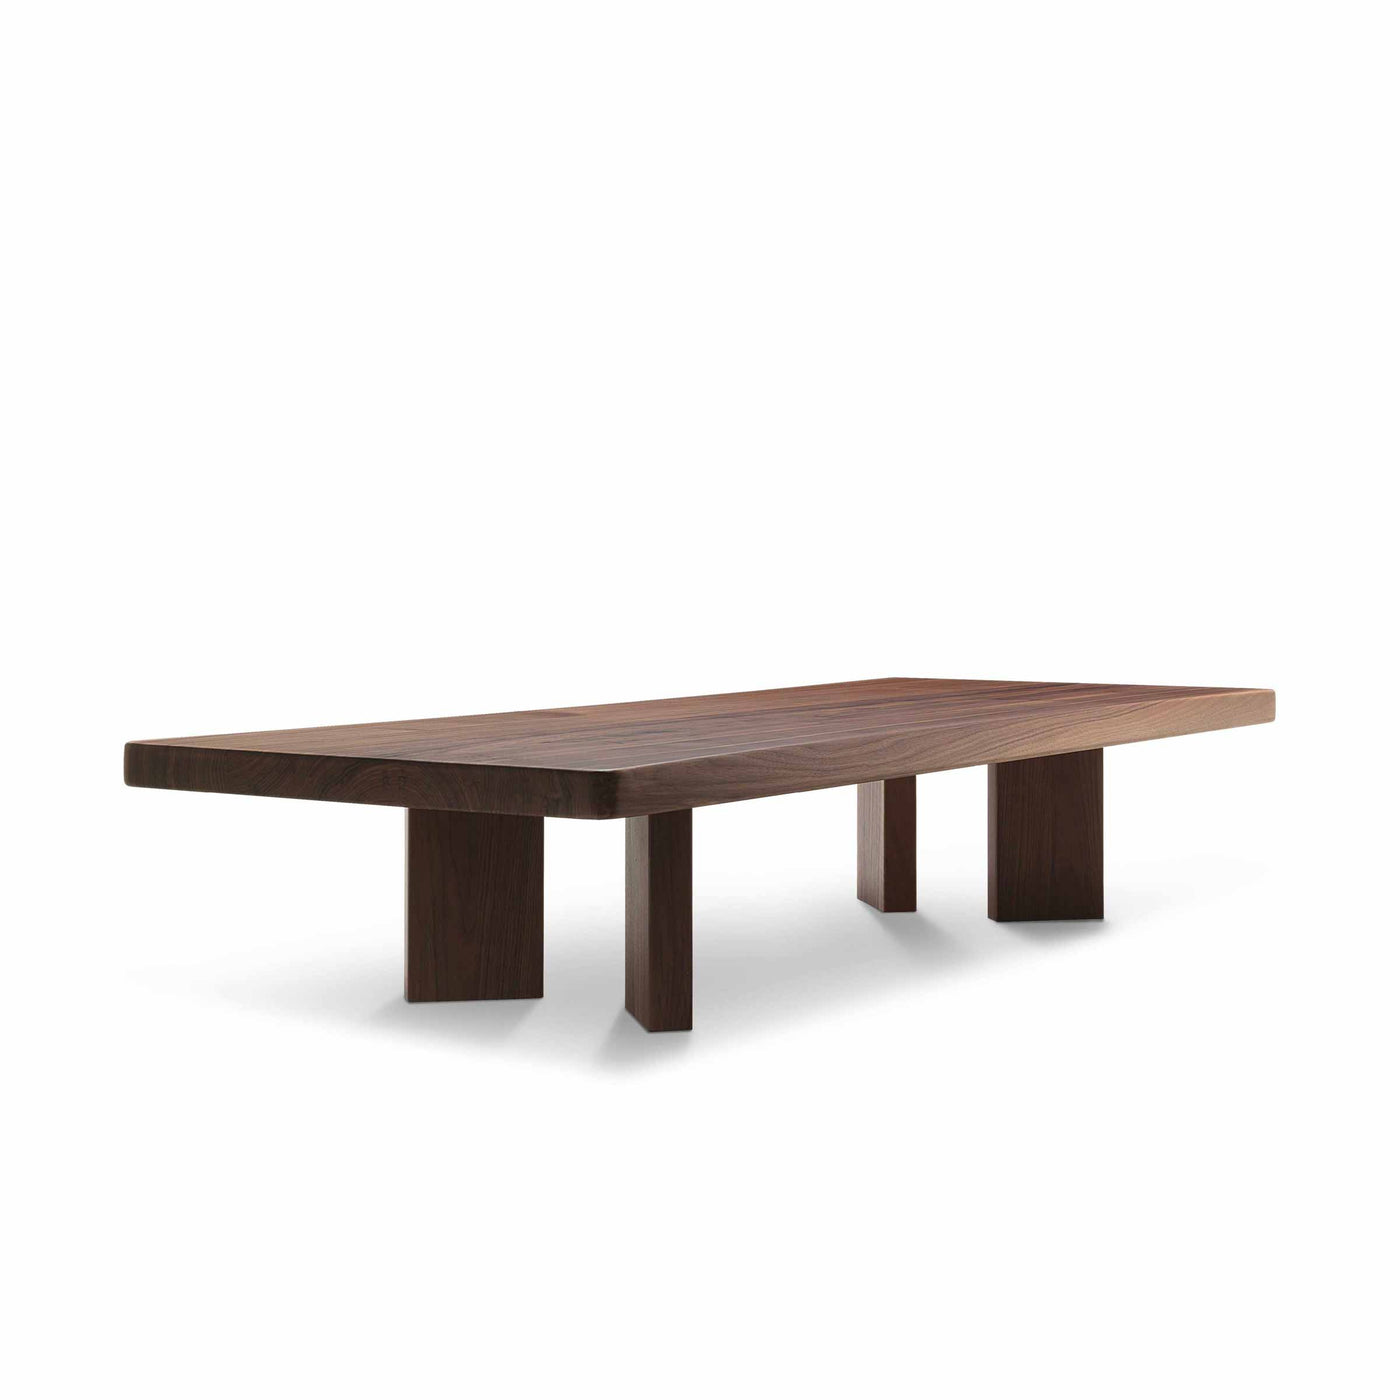 Table Basse en Bois PLANA, design Charlotte Perriand pour Cassina